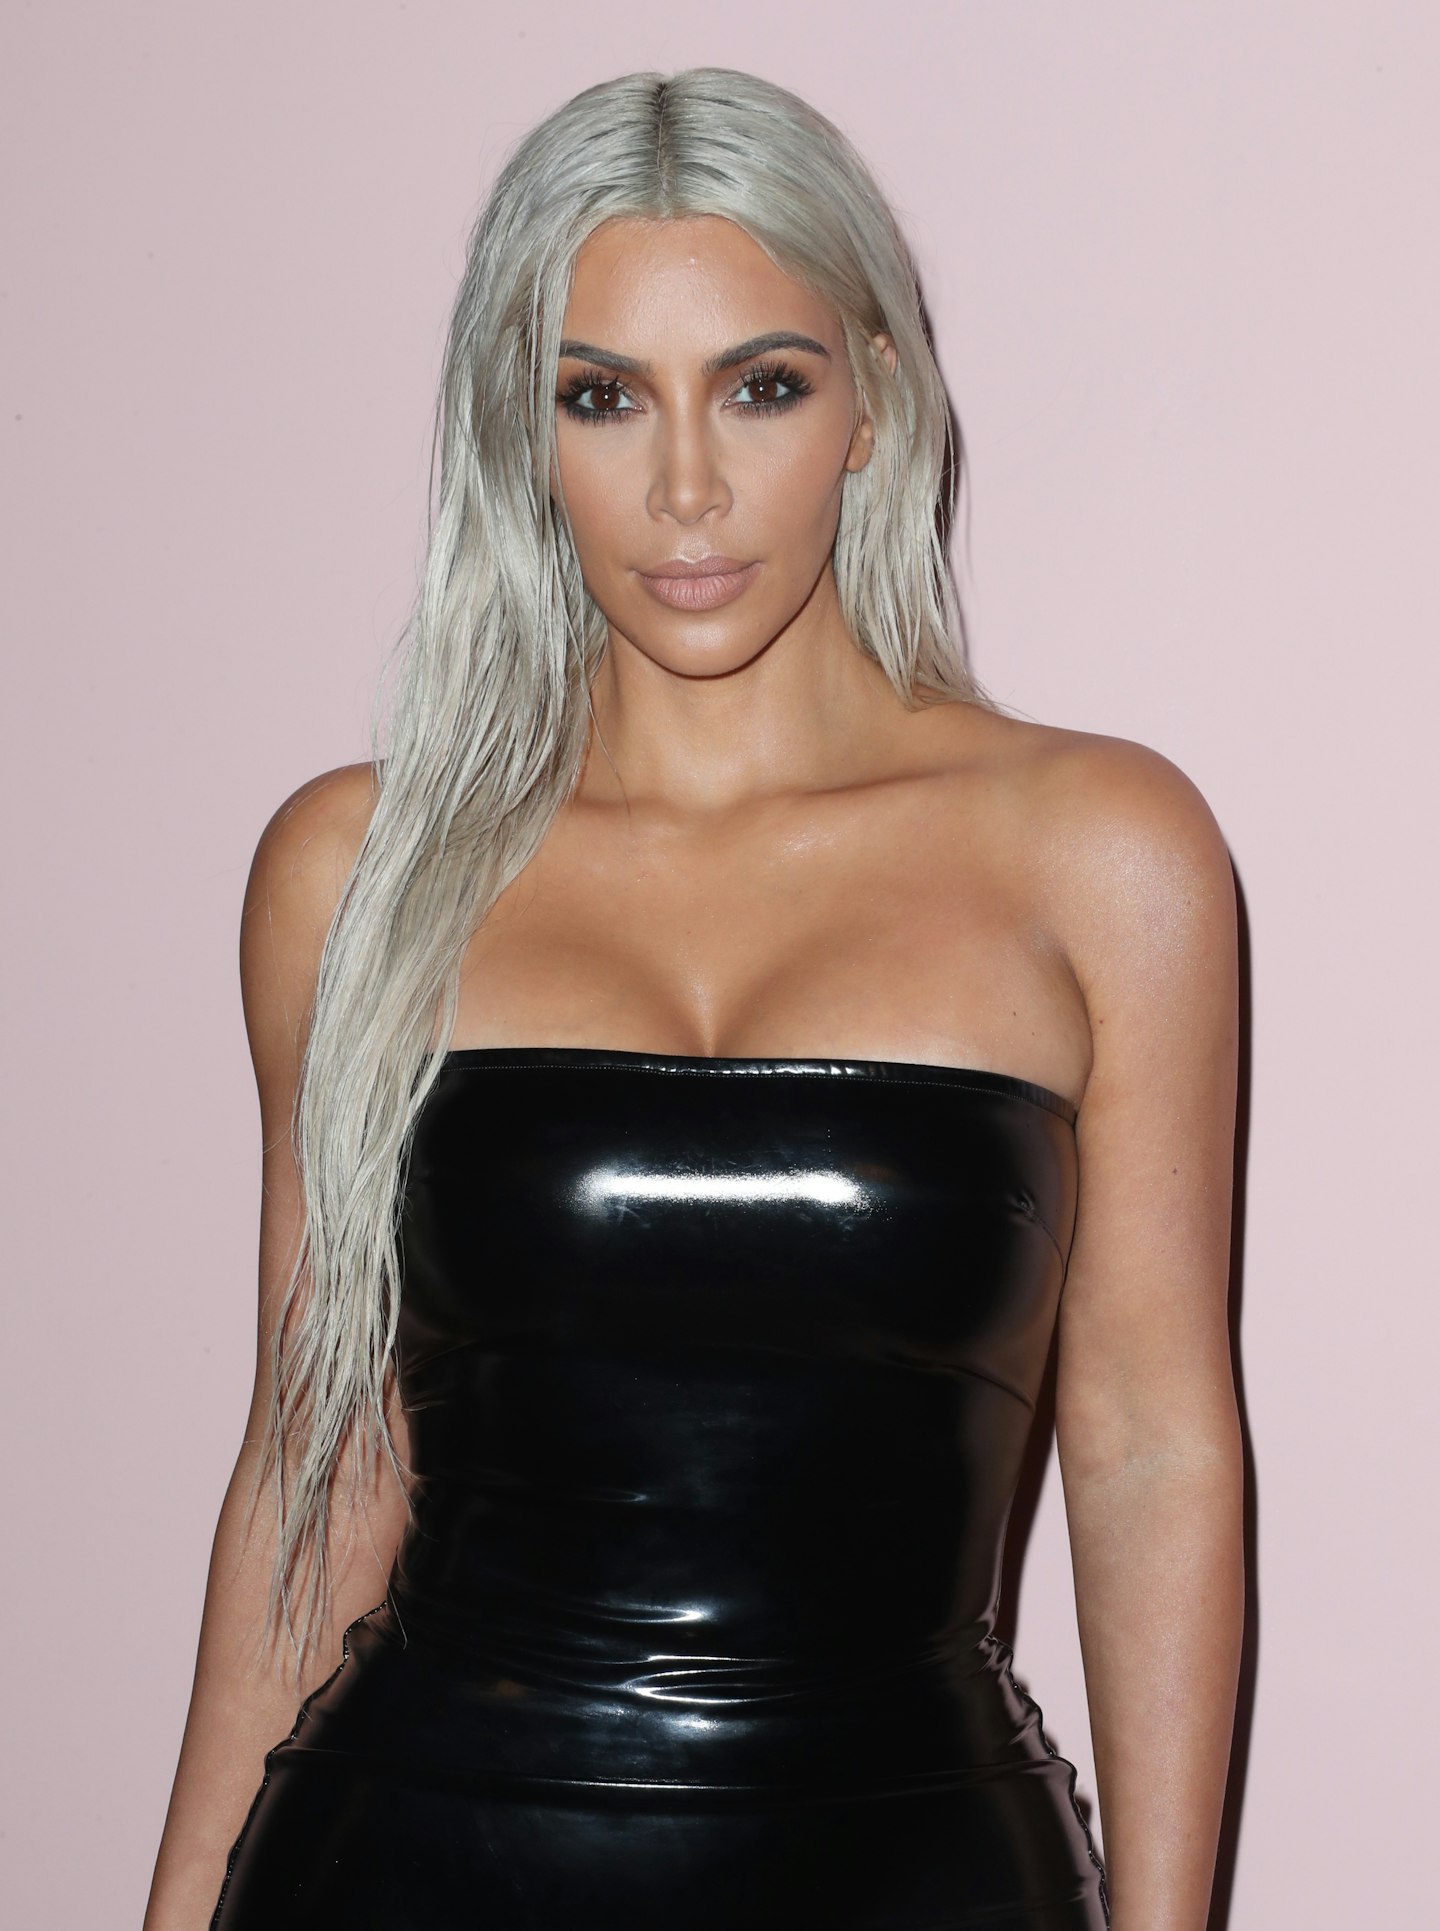 Evolution of Kim Kardashian's Hair